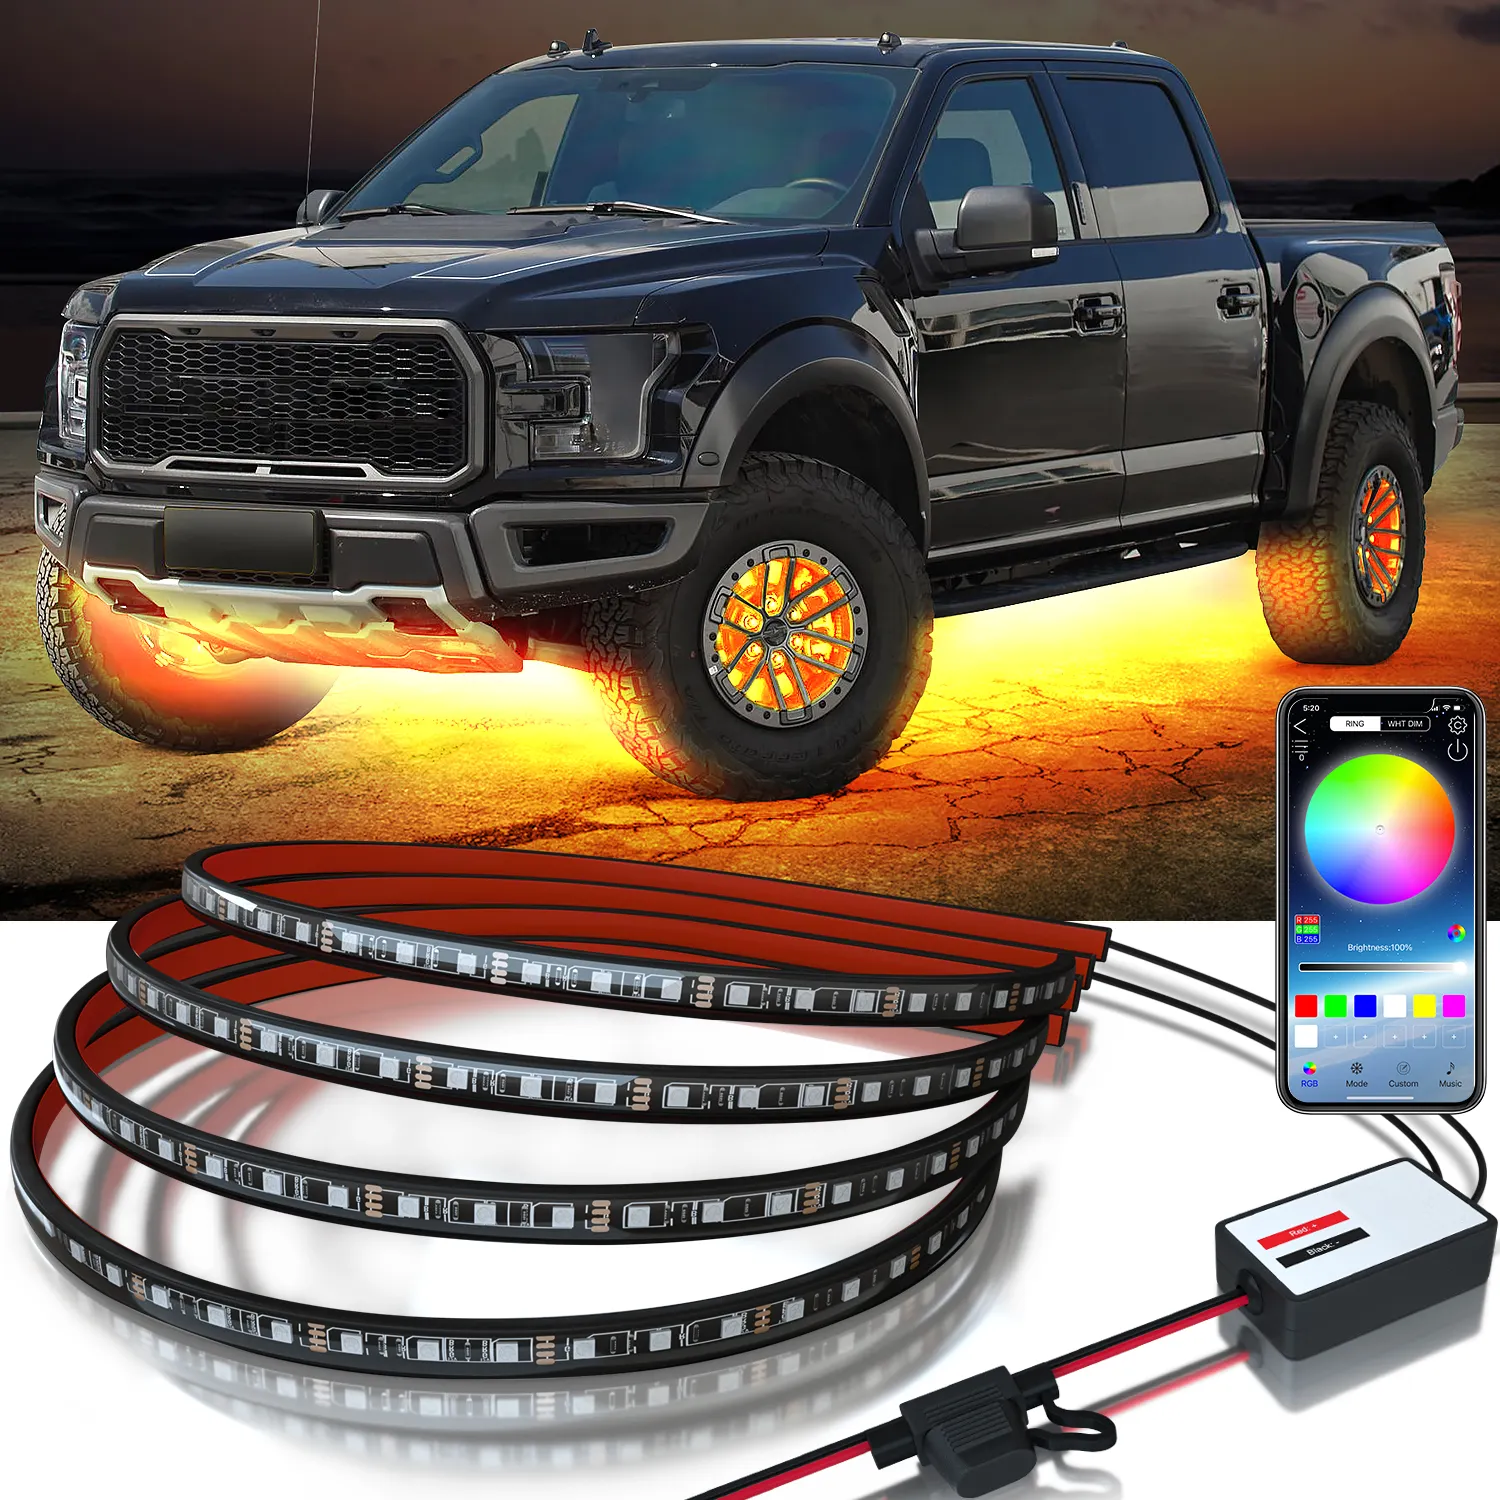 Kit de iluminação ambiente exterior IP68 RGB LED para carro, luzes LED multicoloridas para carros, controle por aplicativo, faixa de luz LED Underglow